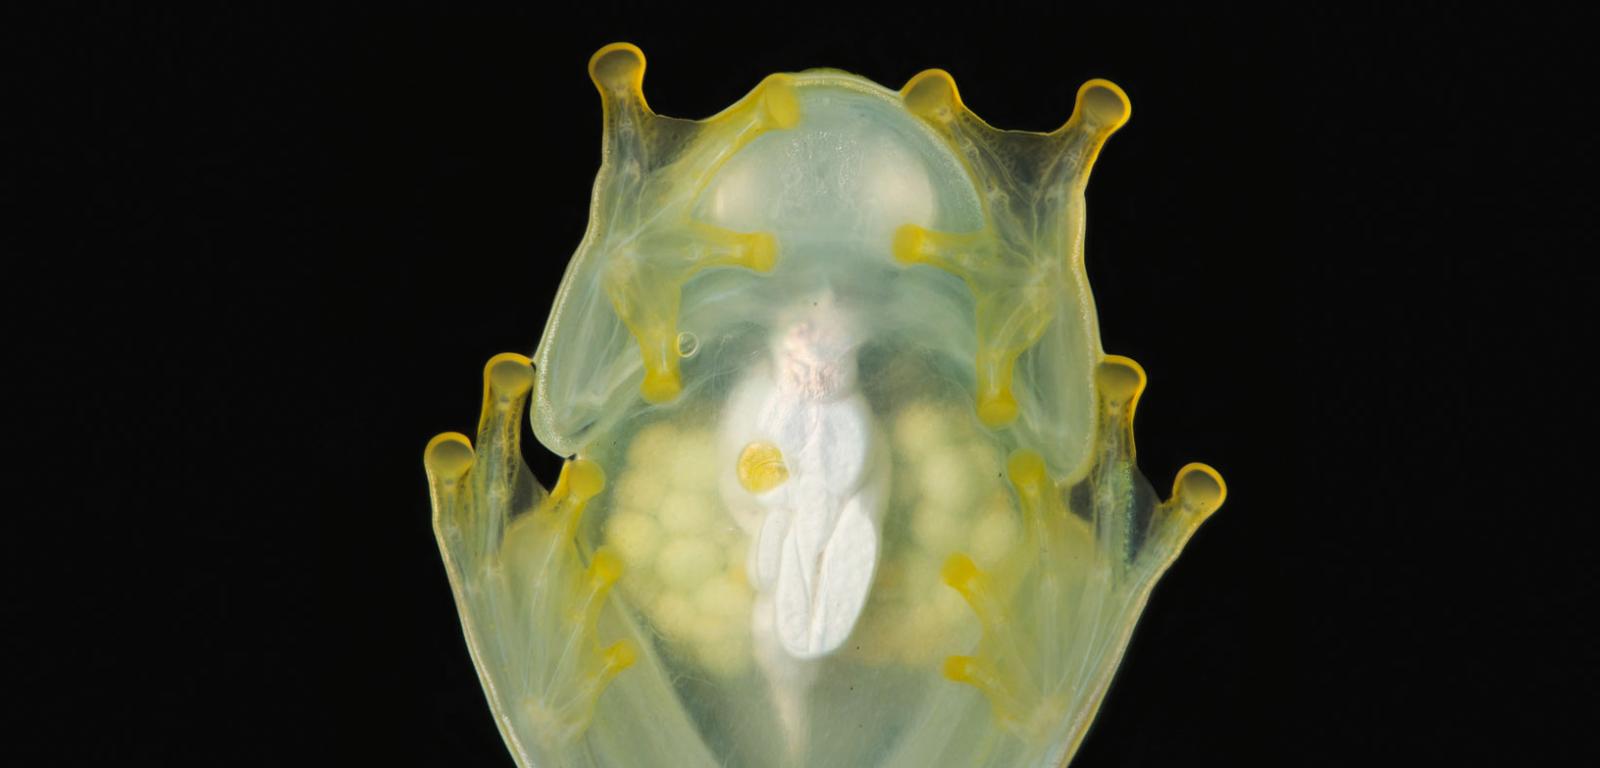 Samica H. fleischmanni w czasie snu. Przez przezroczyste ciało widać jajniki i obecne w nich jaja (lewa i prawa strona).